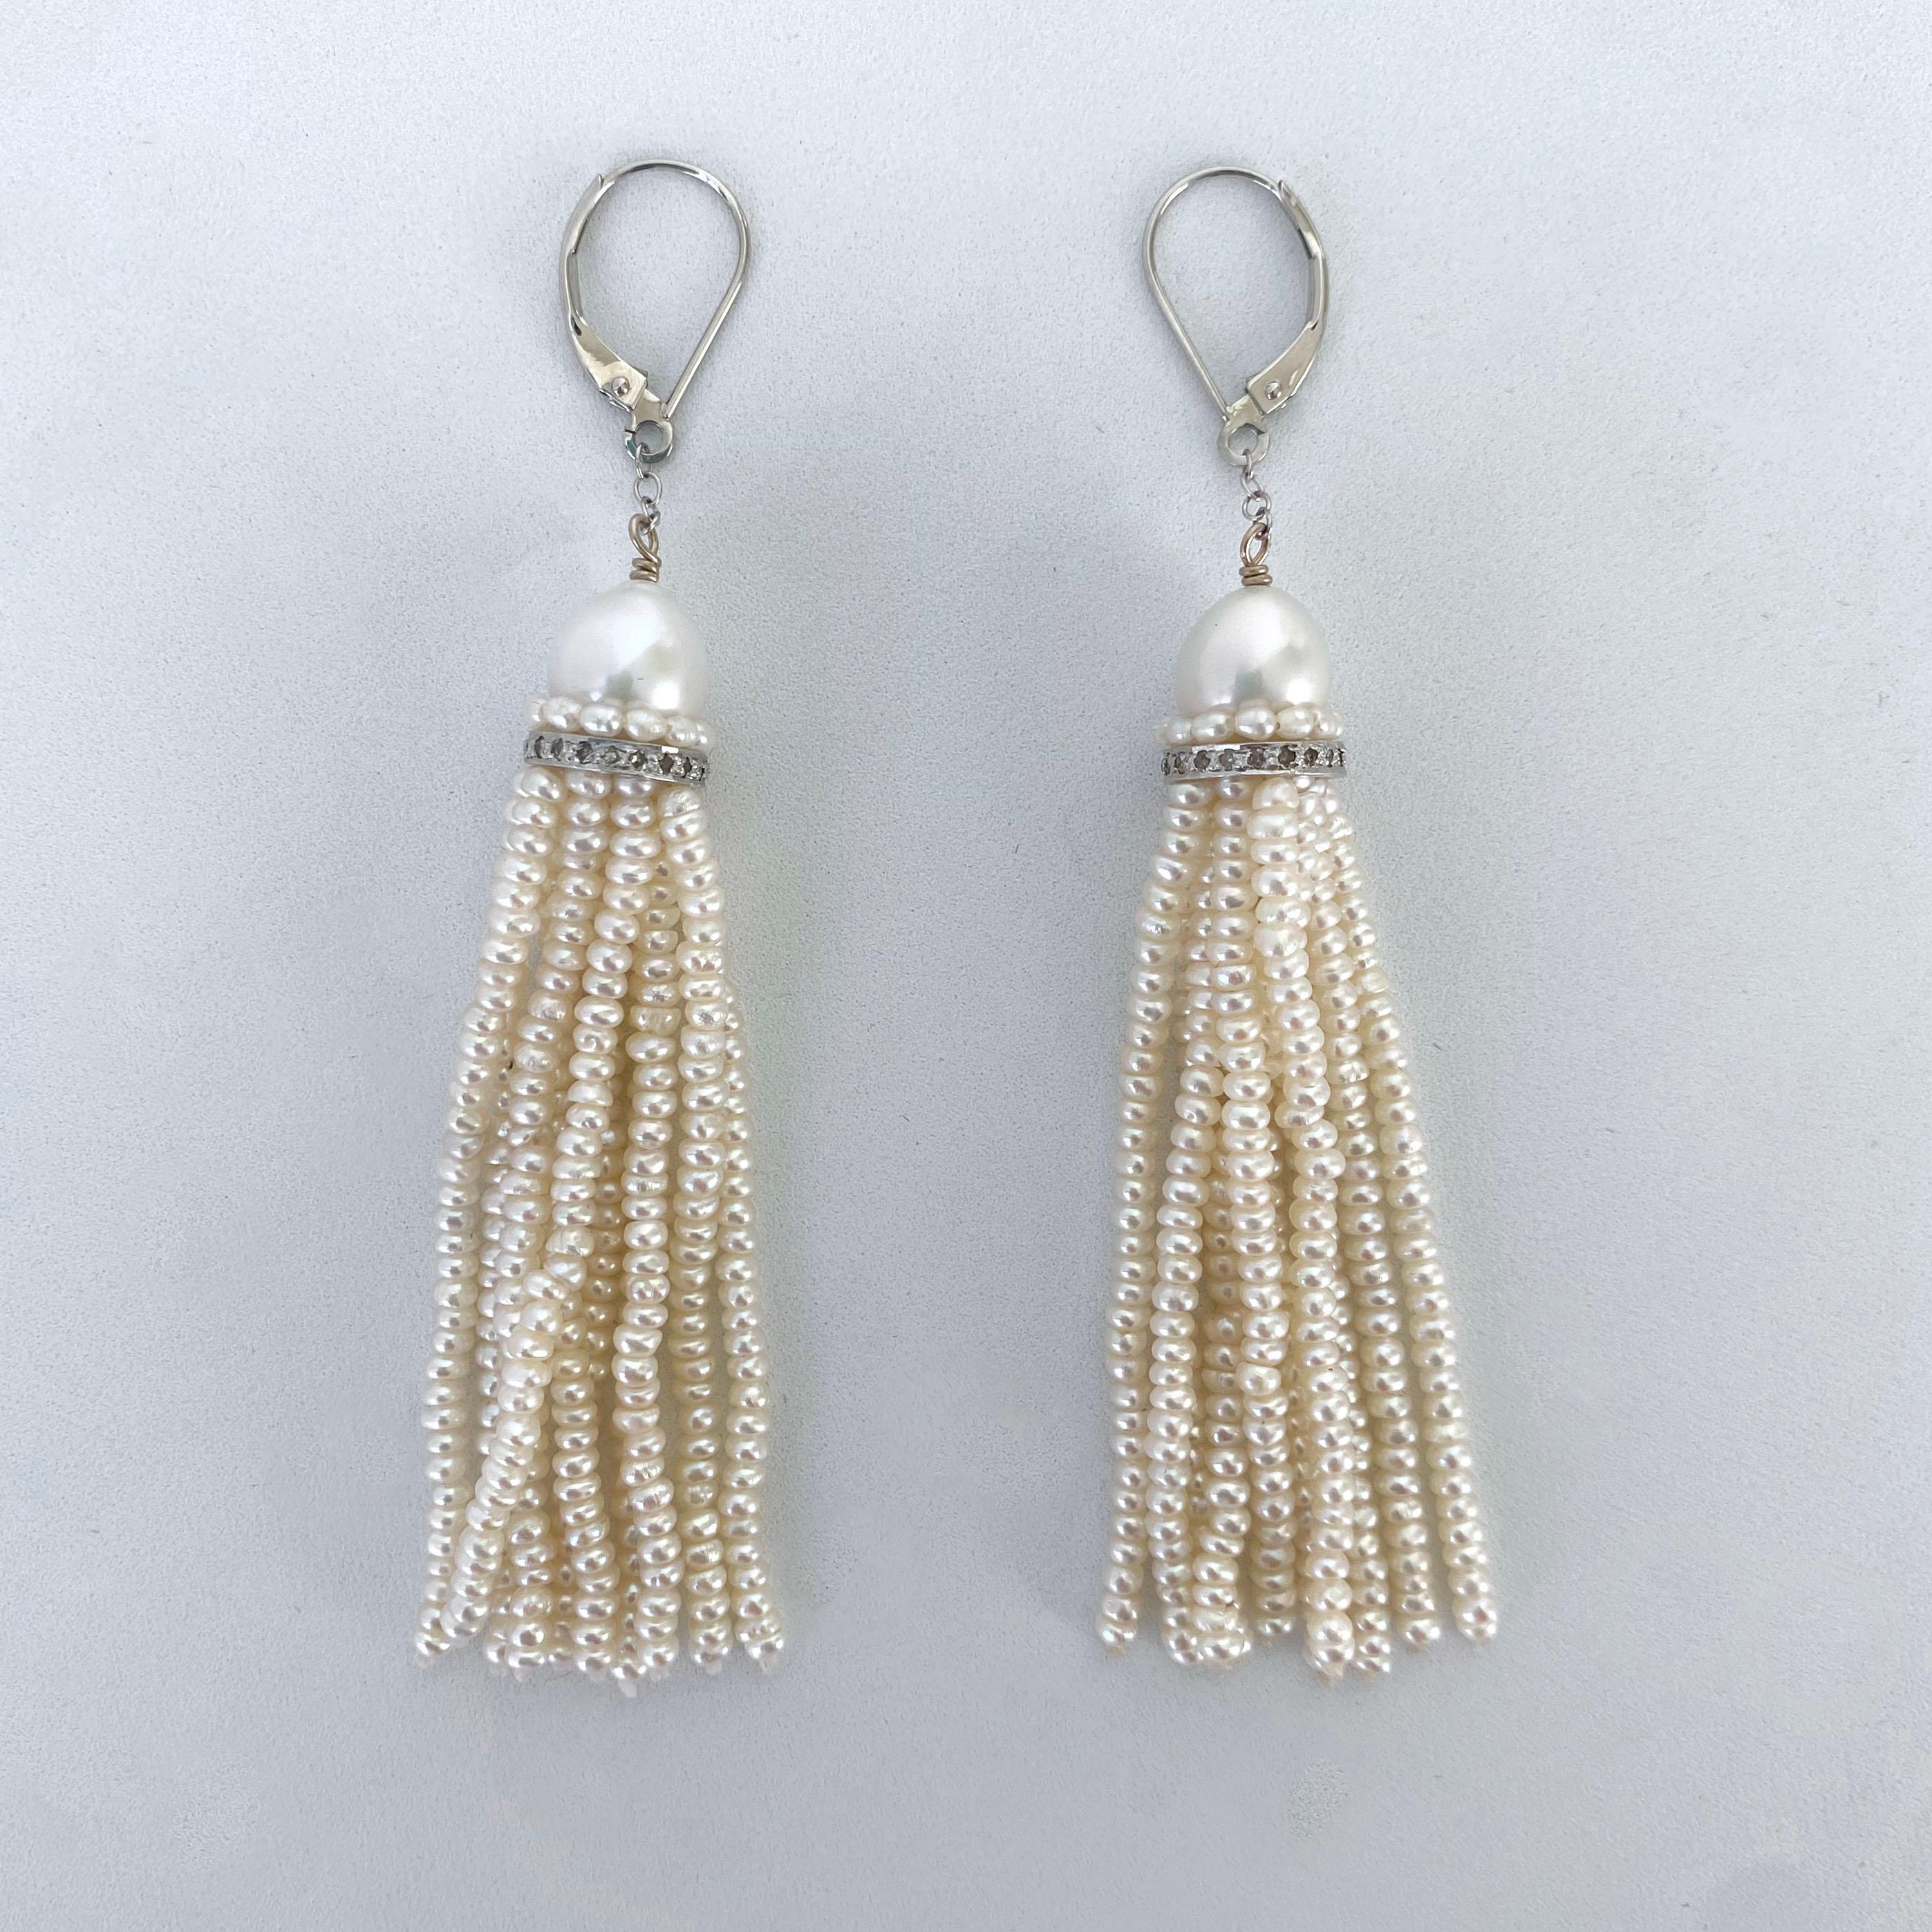 Paire d'Eleg simples, classiques et élégantes de Marina J.

Cette jolie paire est composée de perles multicolores, d'argent plaqué rhodium et de diamants. Une perle en forme d'amande est posée sur une bande de perles et un anneau d'argent rhodié